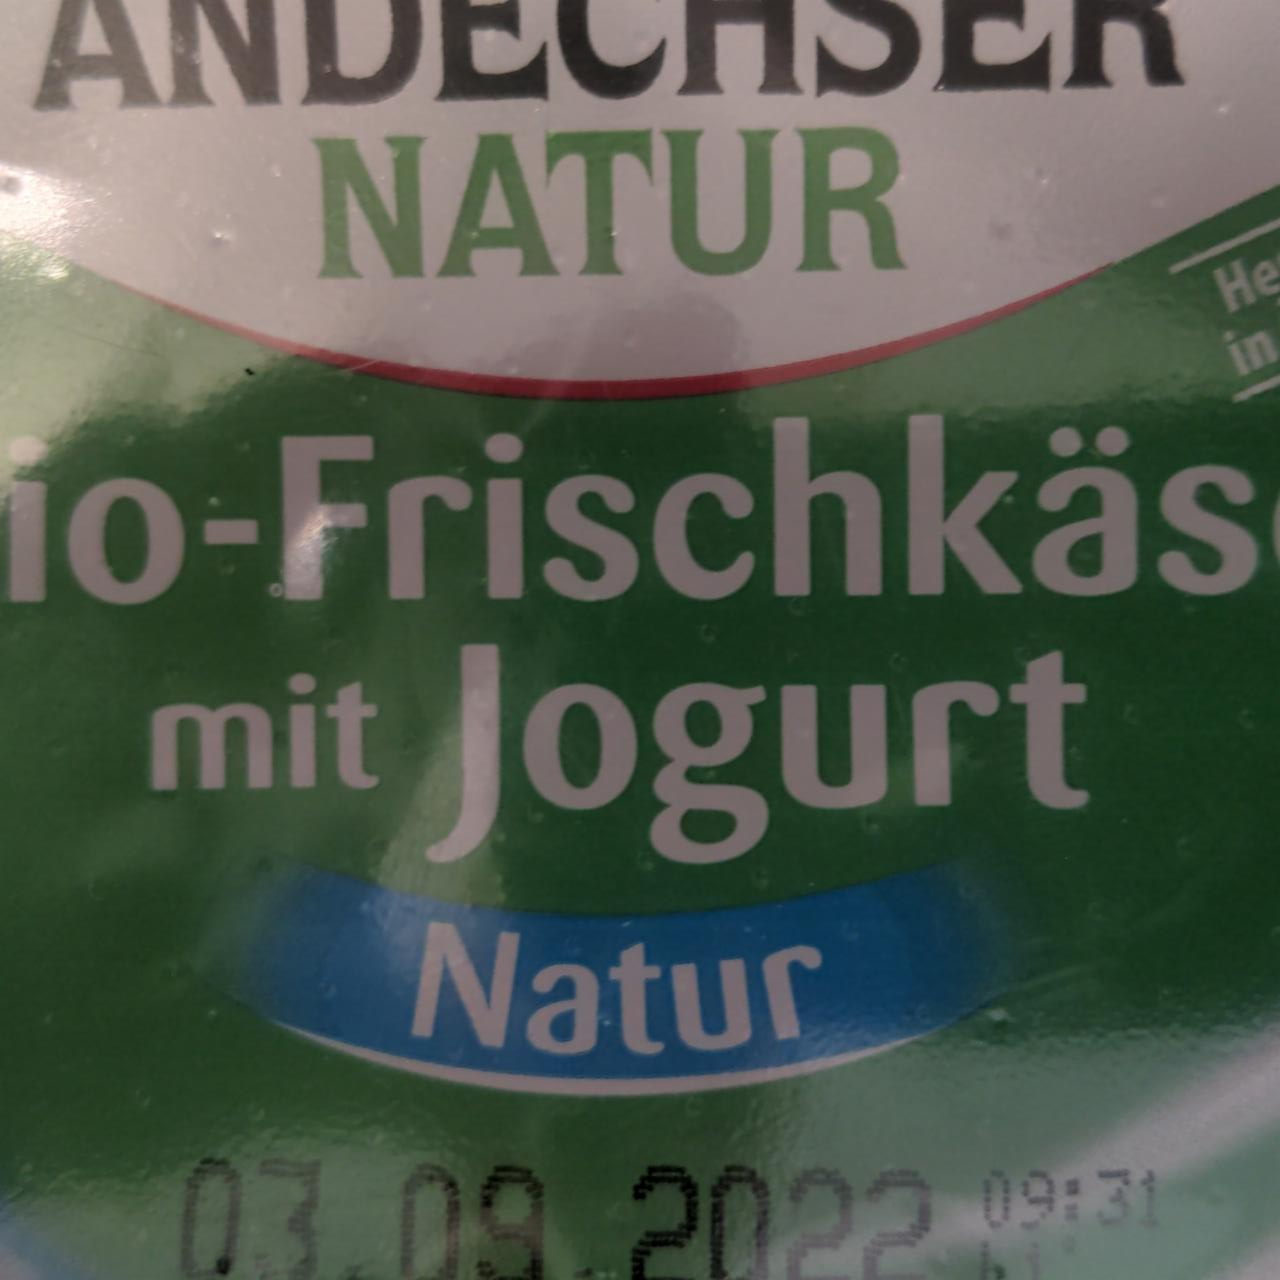 Fotografie - Bio Frischkäse mit Jogurt Andechser Natur